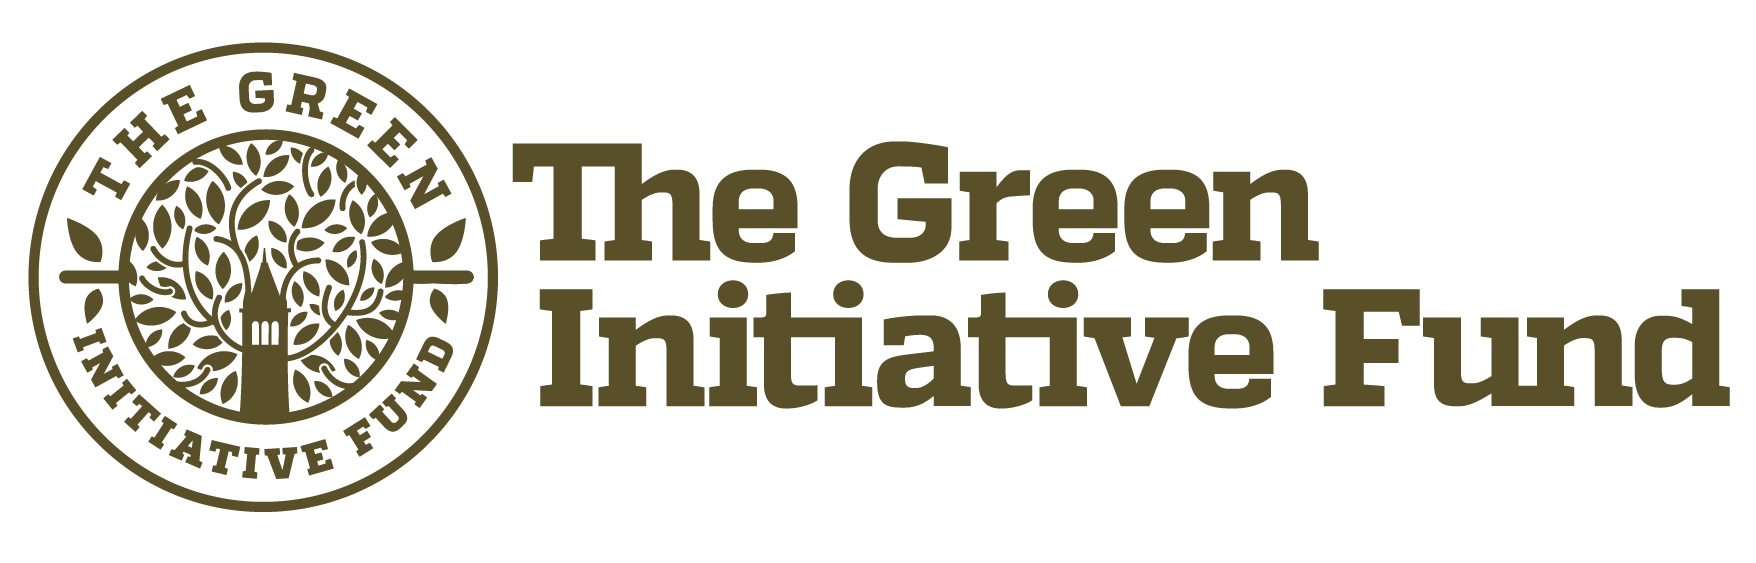 The Green Initiative Fund